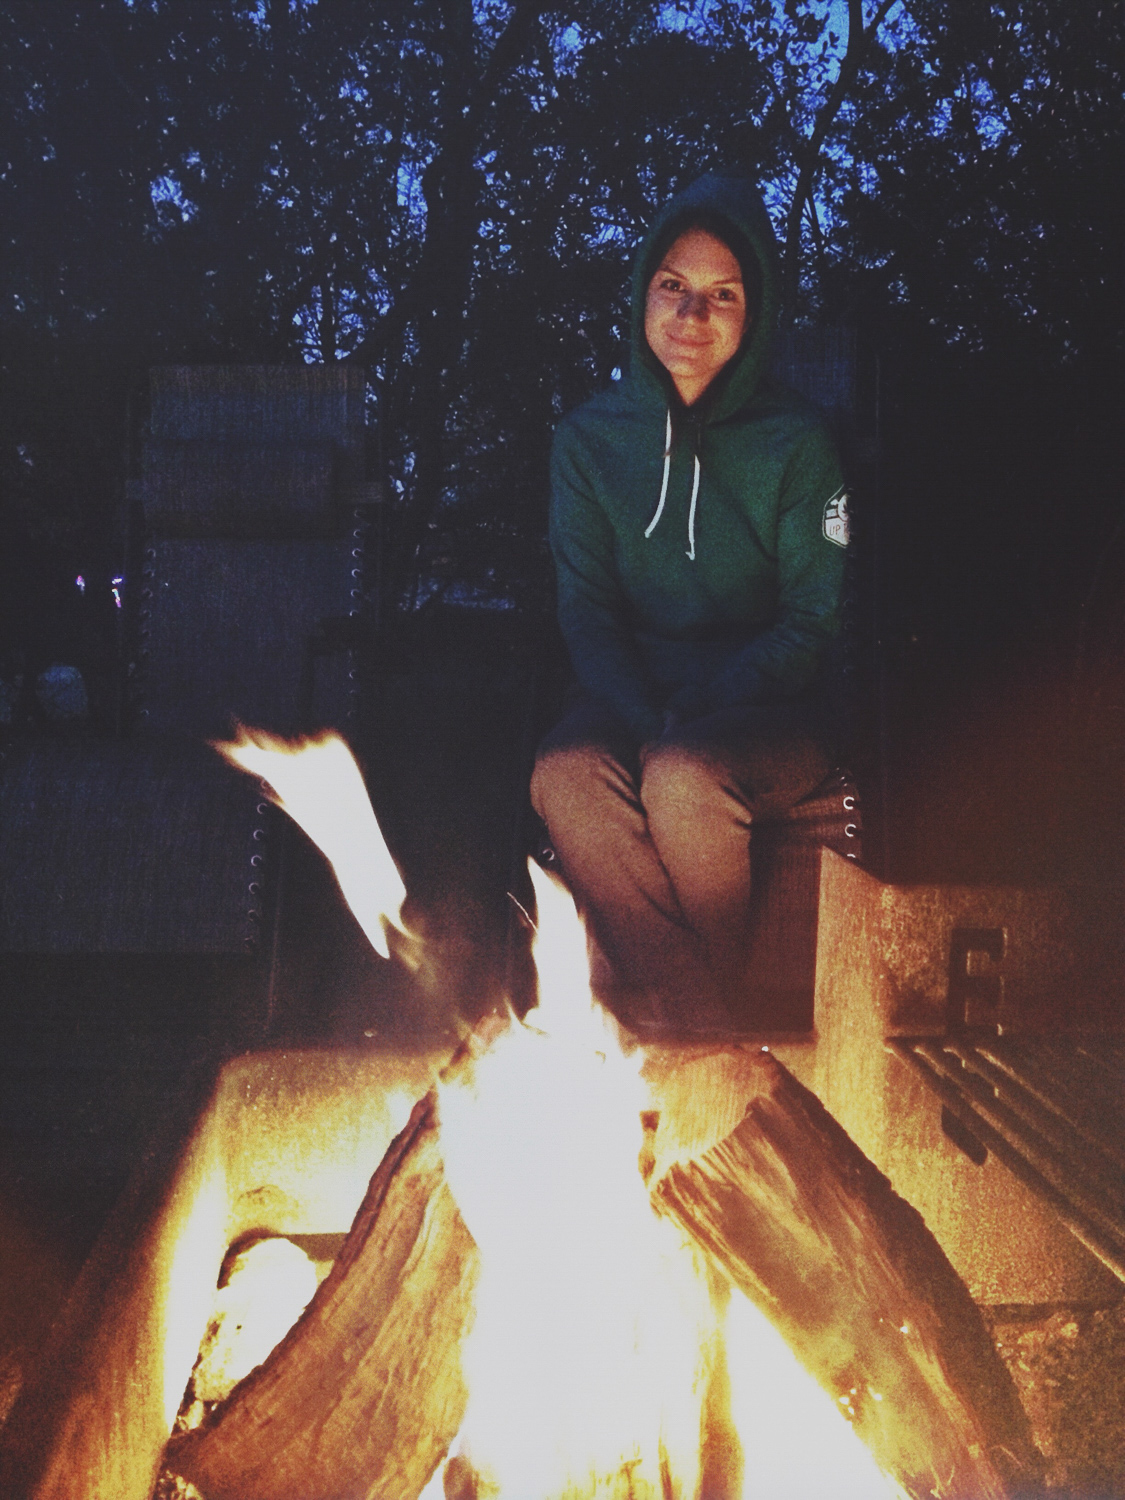 Toni at Campfire